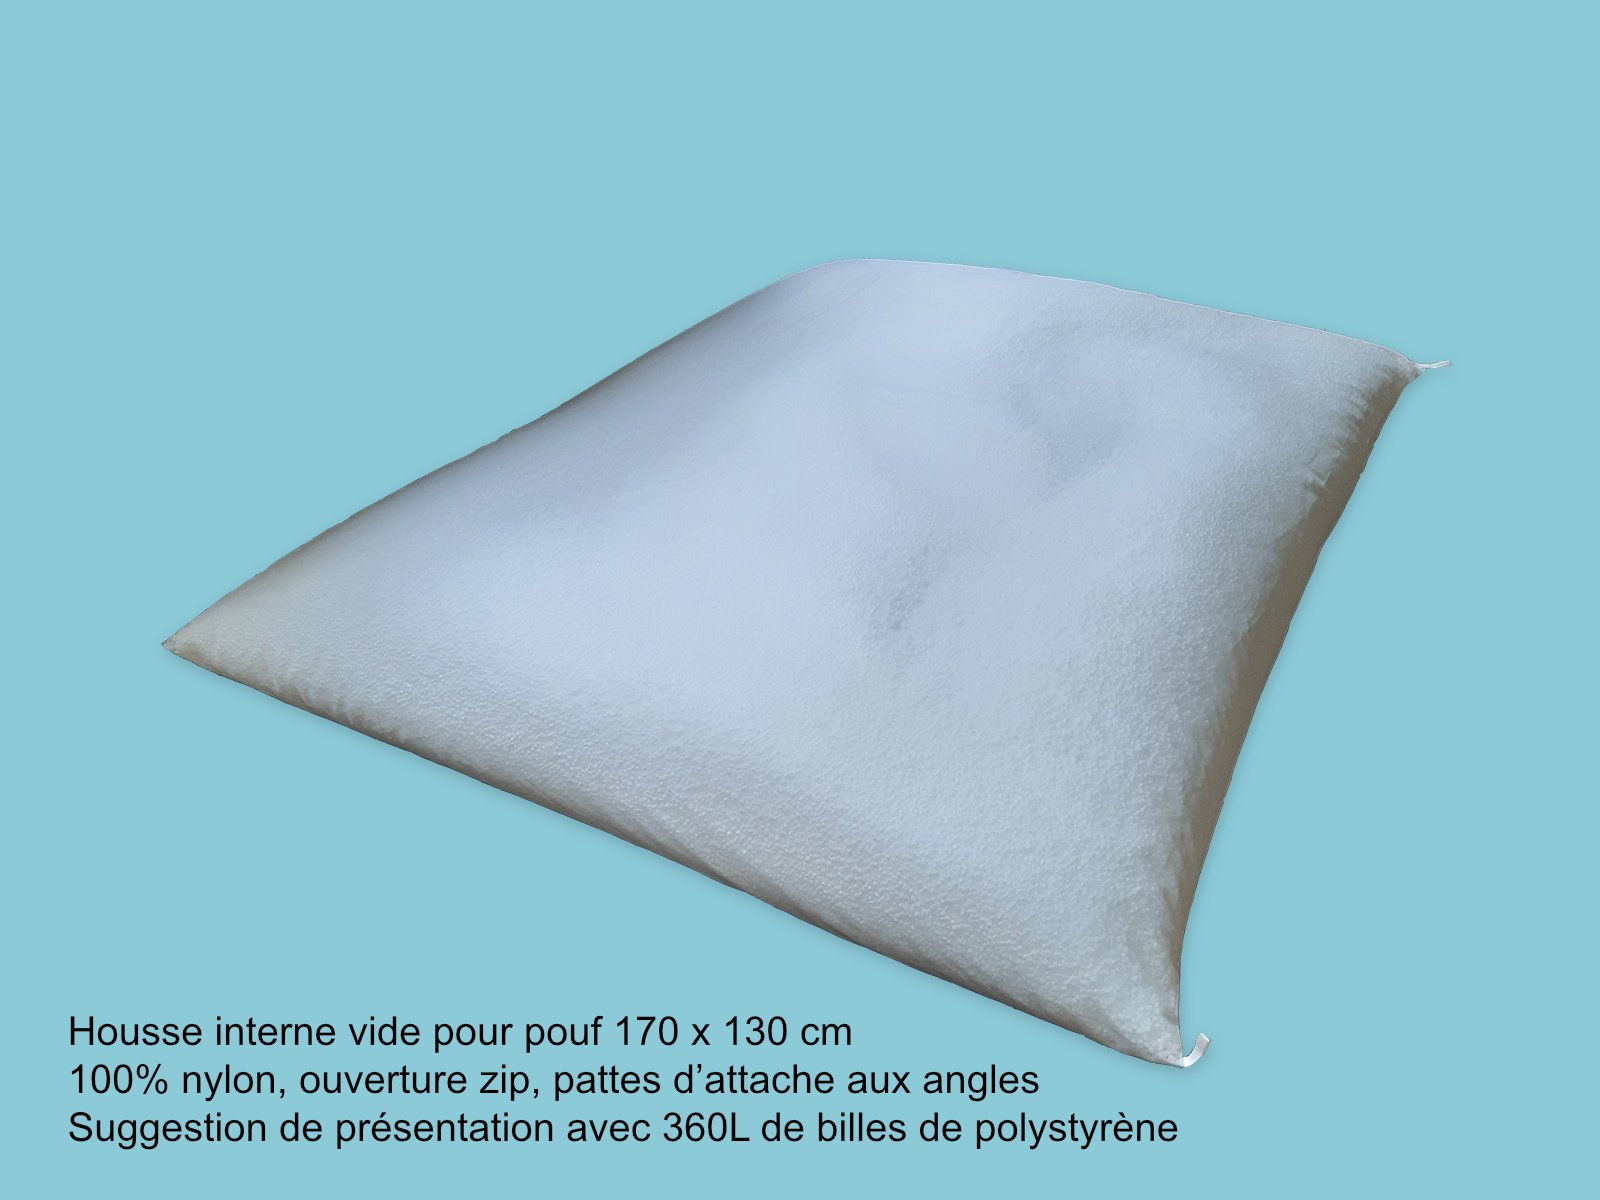 Housse interne vide pour pouf coussin géant 170 x 130 cm à 15,00 €